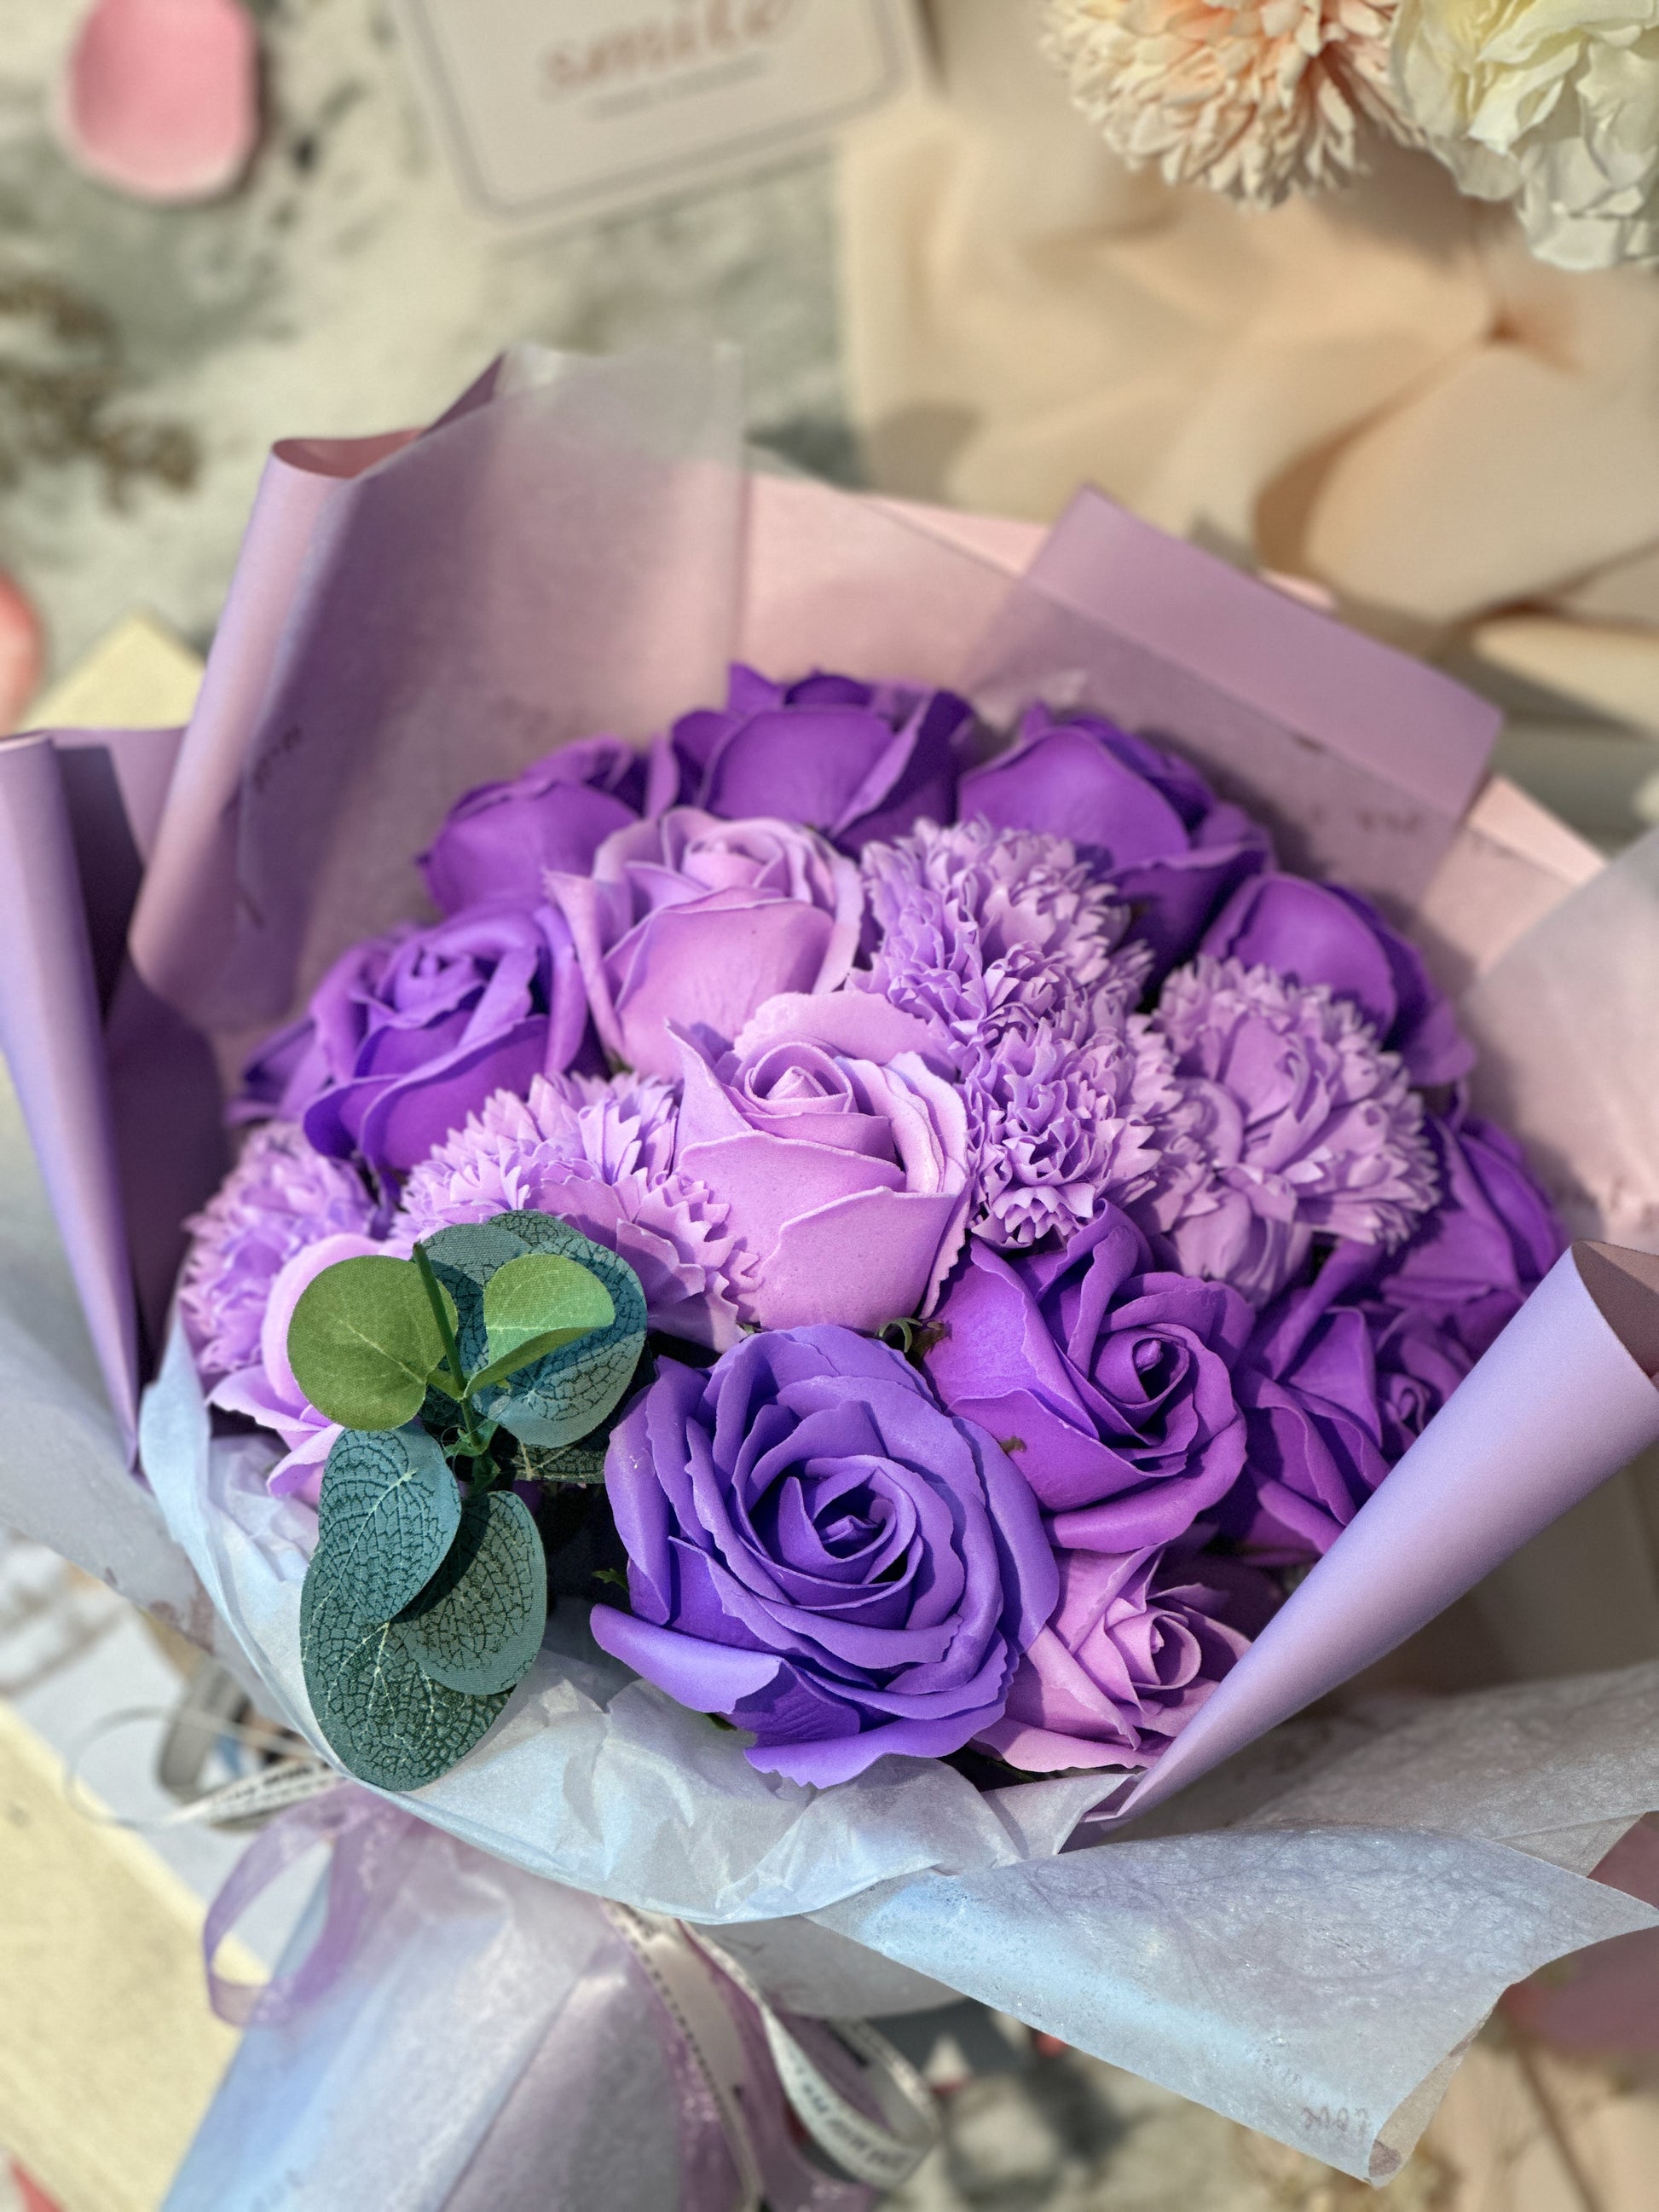 Money 7-Flowers Bouquet – HI-BYE STORE™